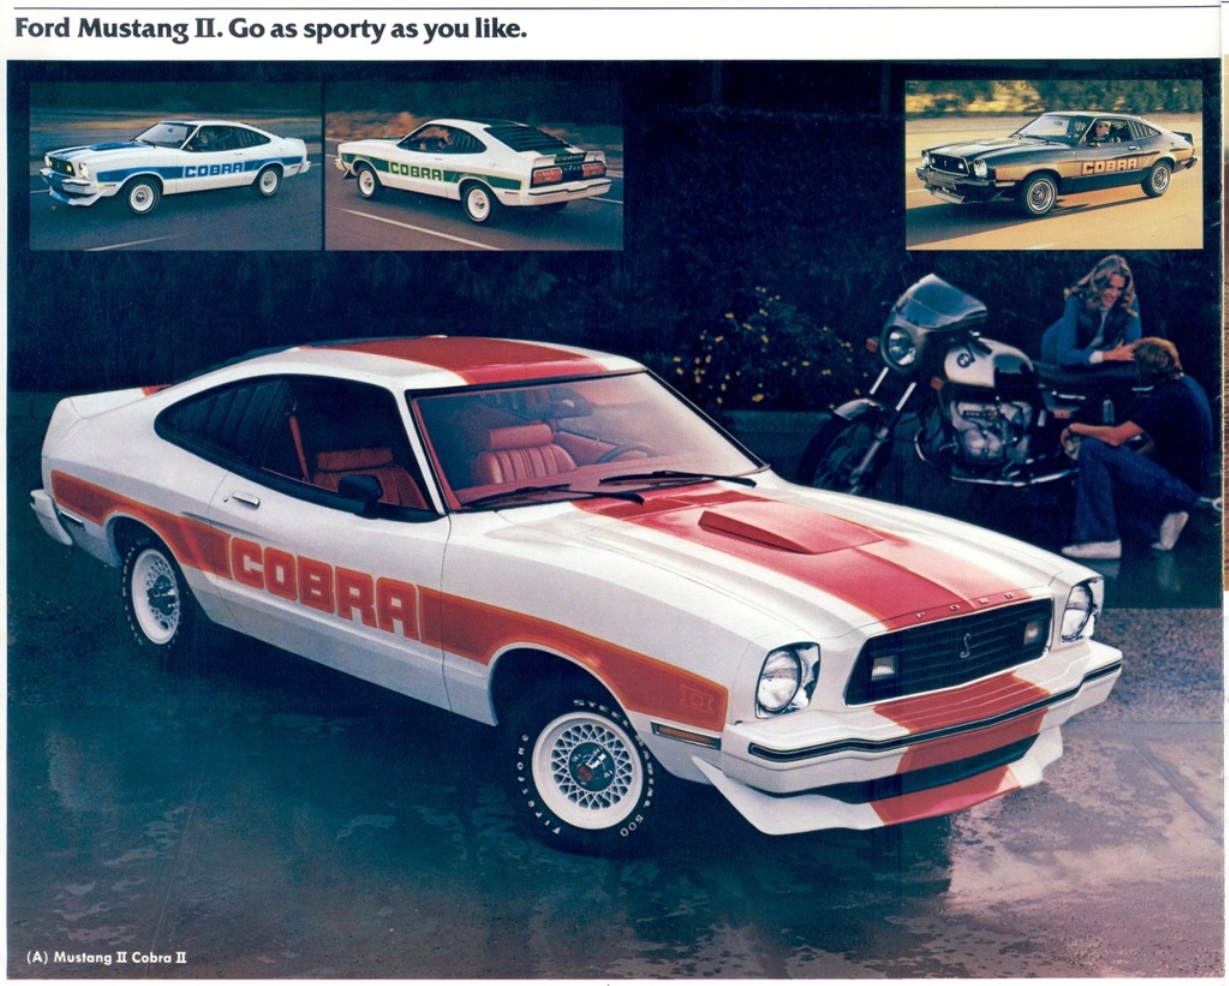 n_1977 Ford Mustang II (rev)-04.jpg